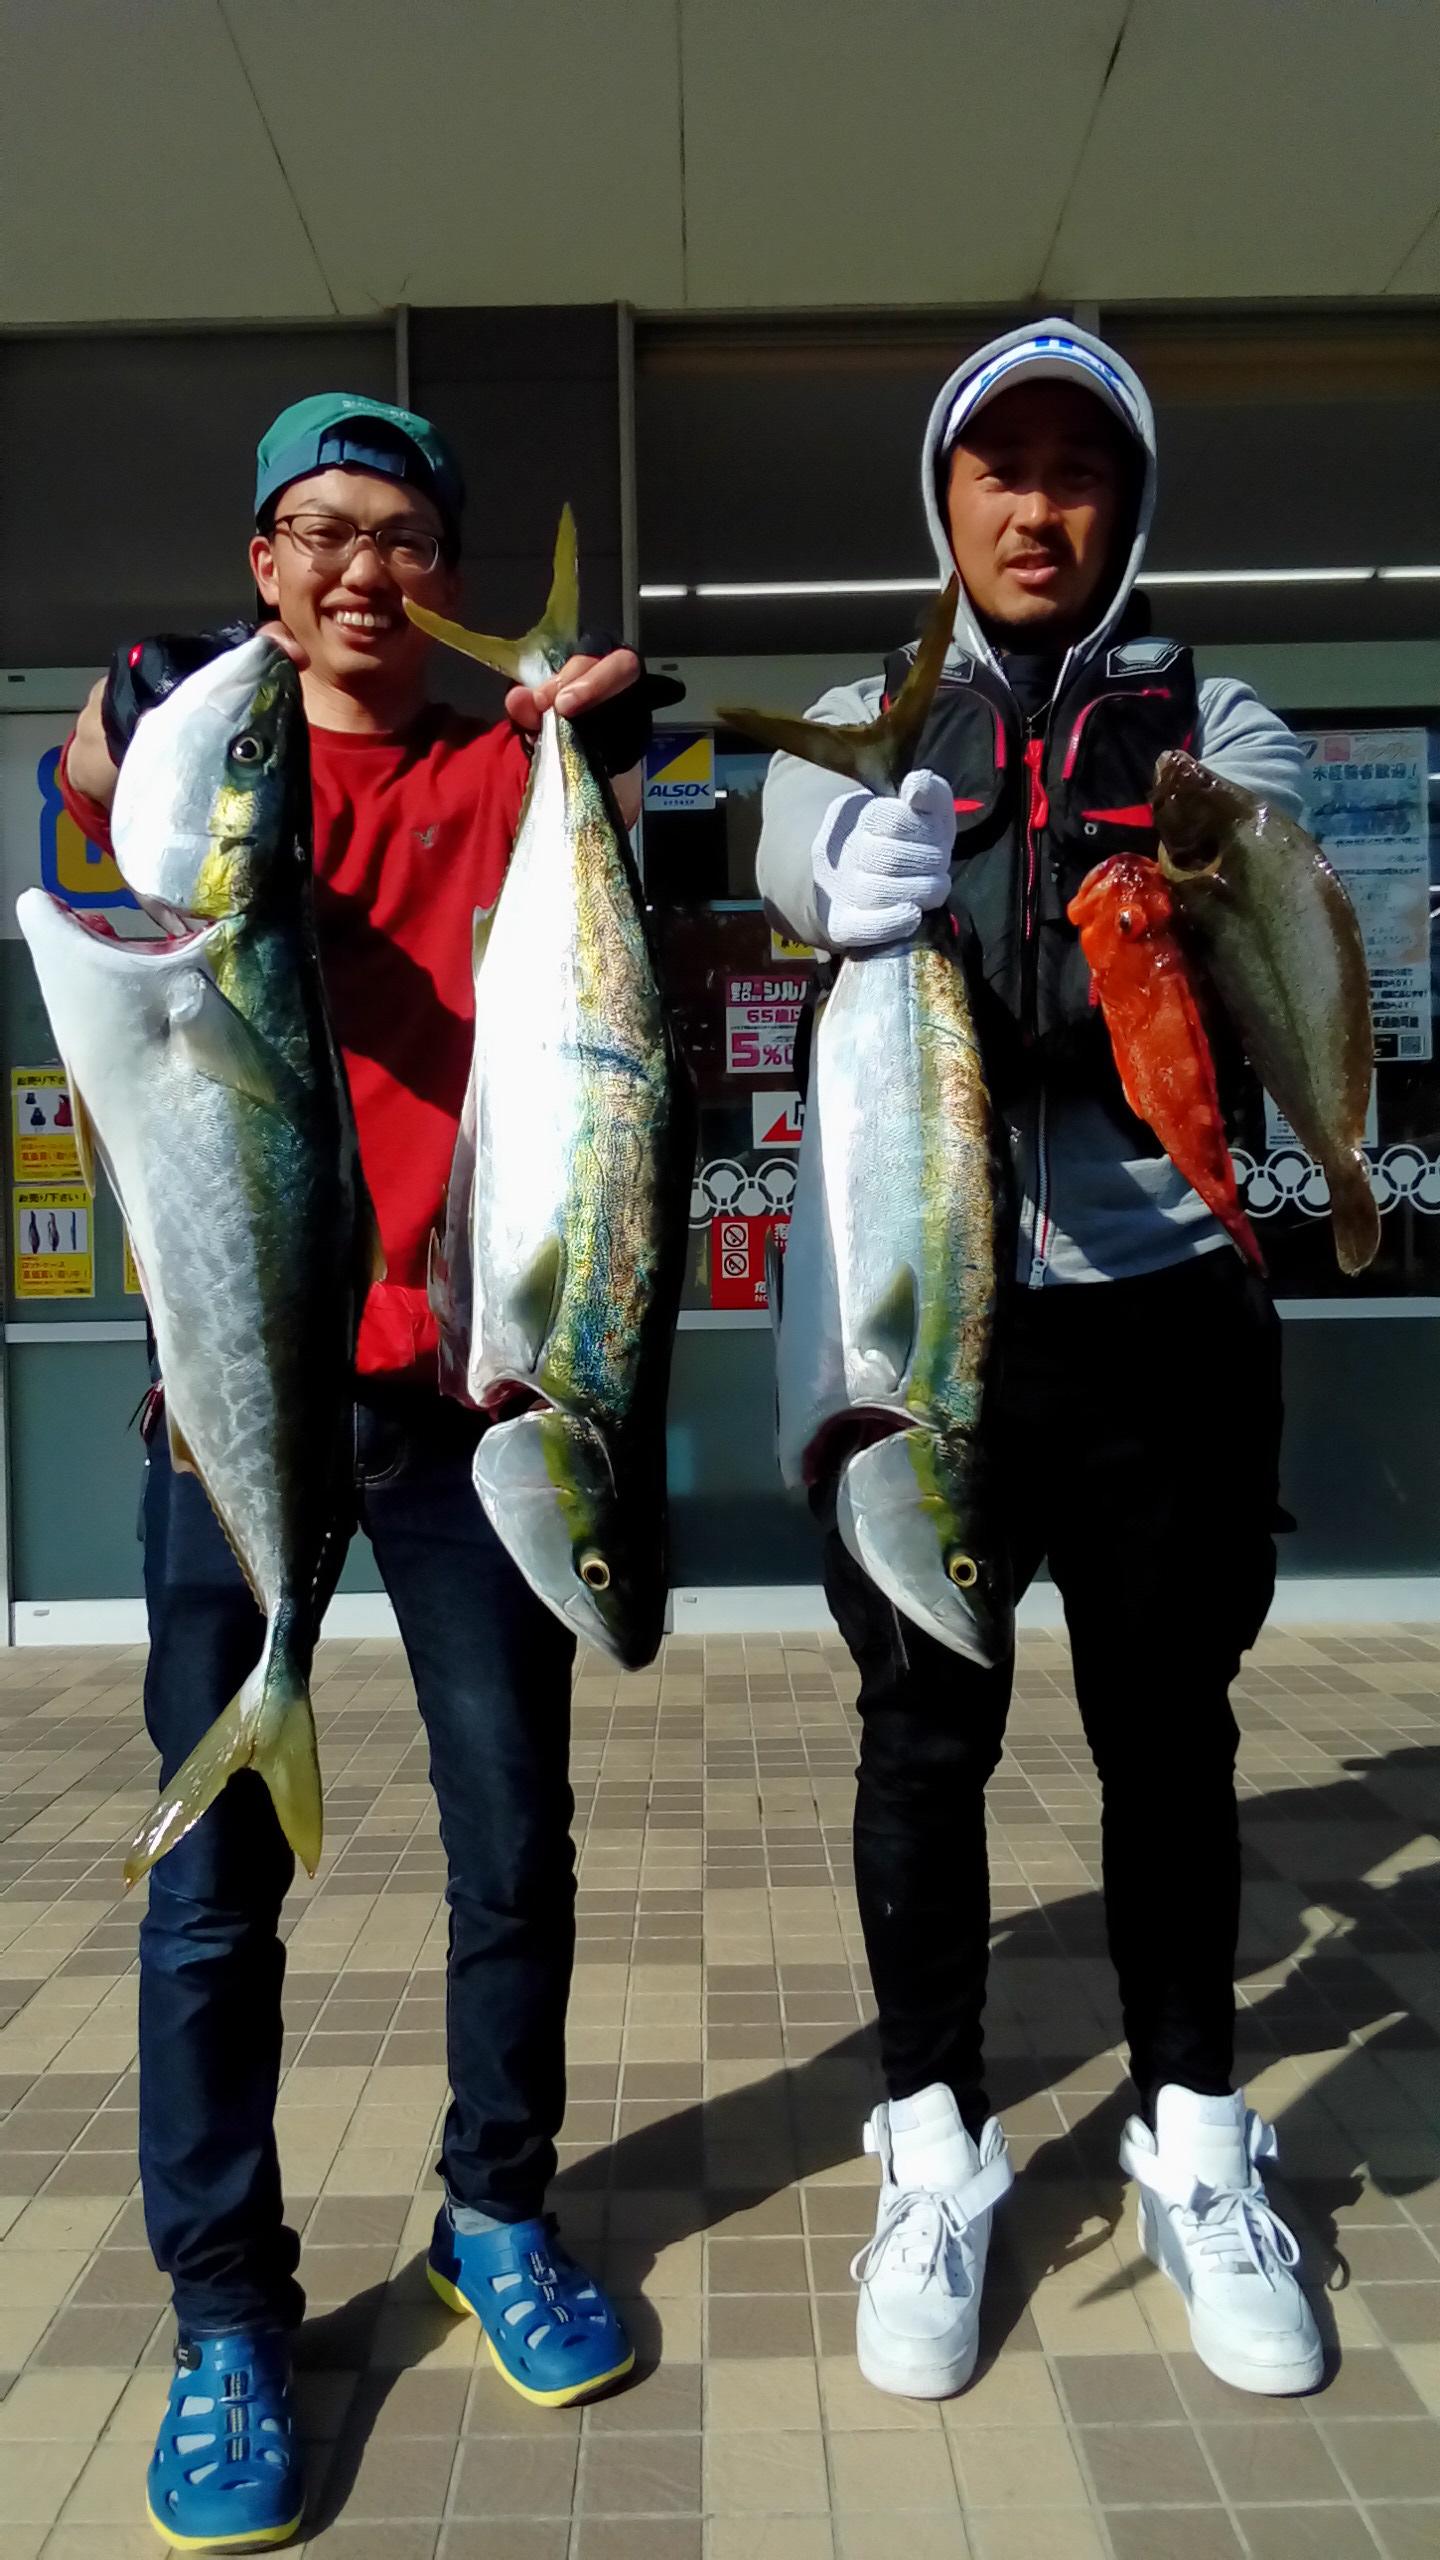 滋賀県からお越しの西澤様と豊橋市の三貝様から釣果写真頂きました。
ヒットジグはメタルフォーカス150グラムでした。